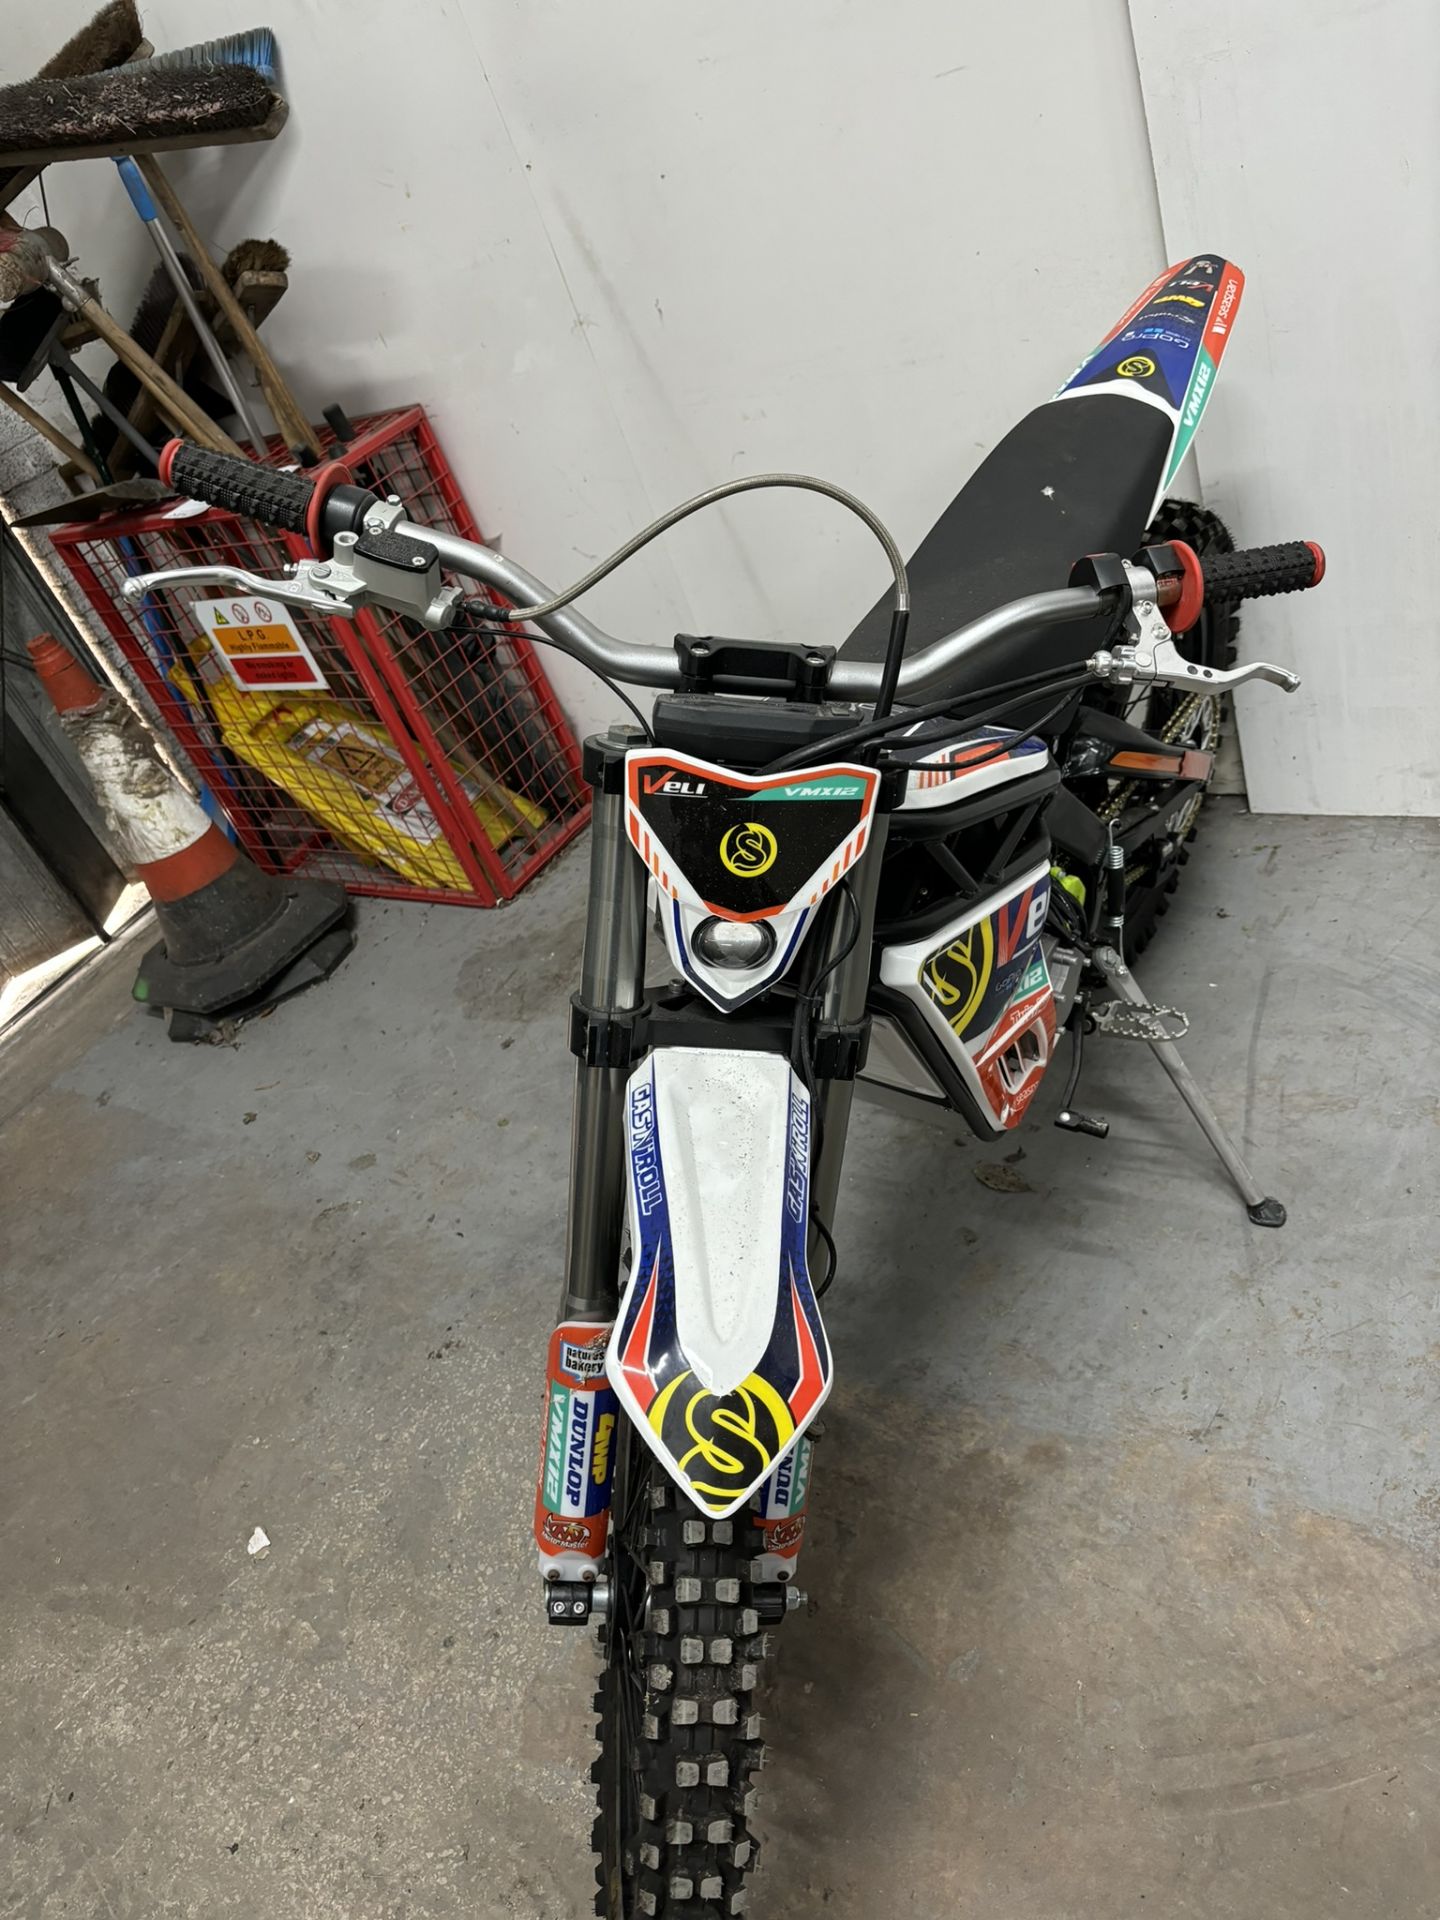 Velimotor VMX12 Electric Motorcycle / Dirt Bike - Image 10 of 24